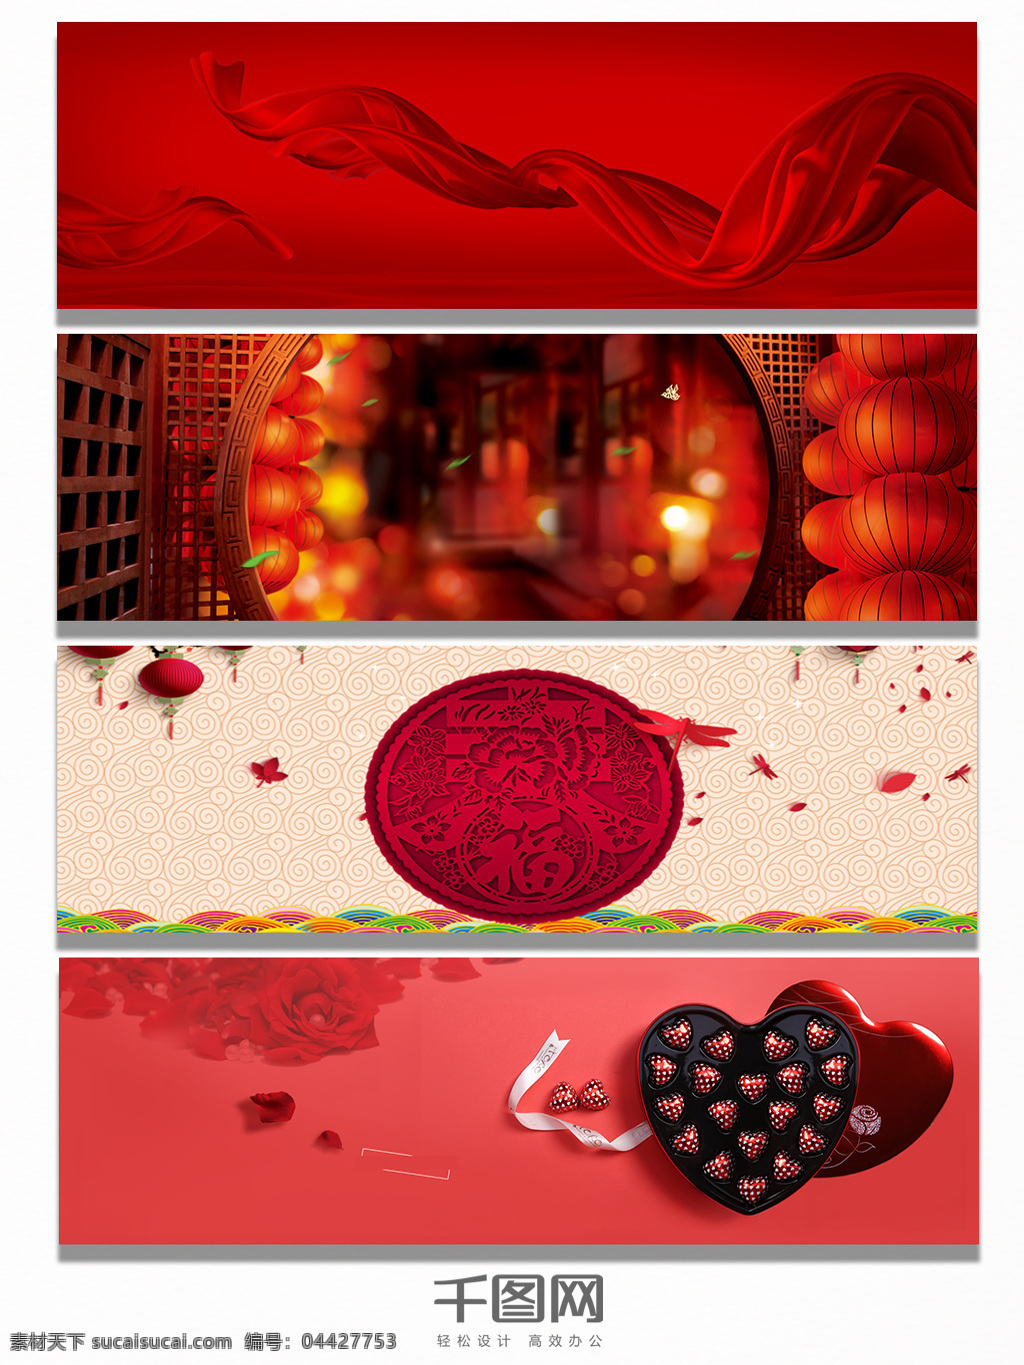 红色 新年 节日 氛围 大气 背景 banner 深红 团圆 巧克力 情人节 米黄色 粉色 心形 灯笼 佳节